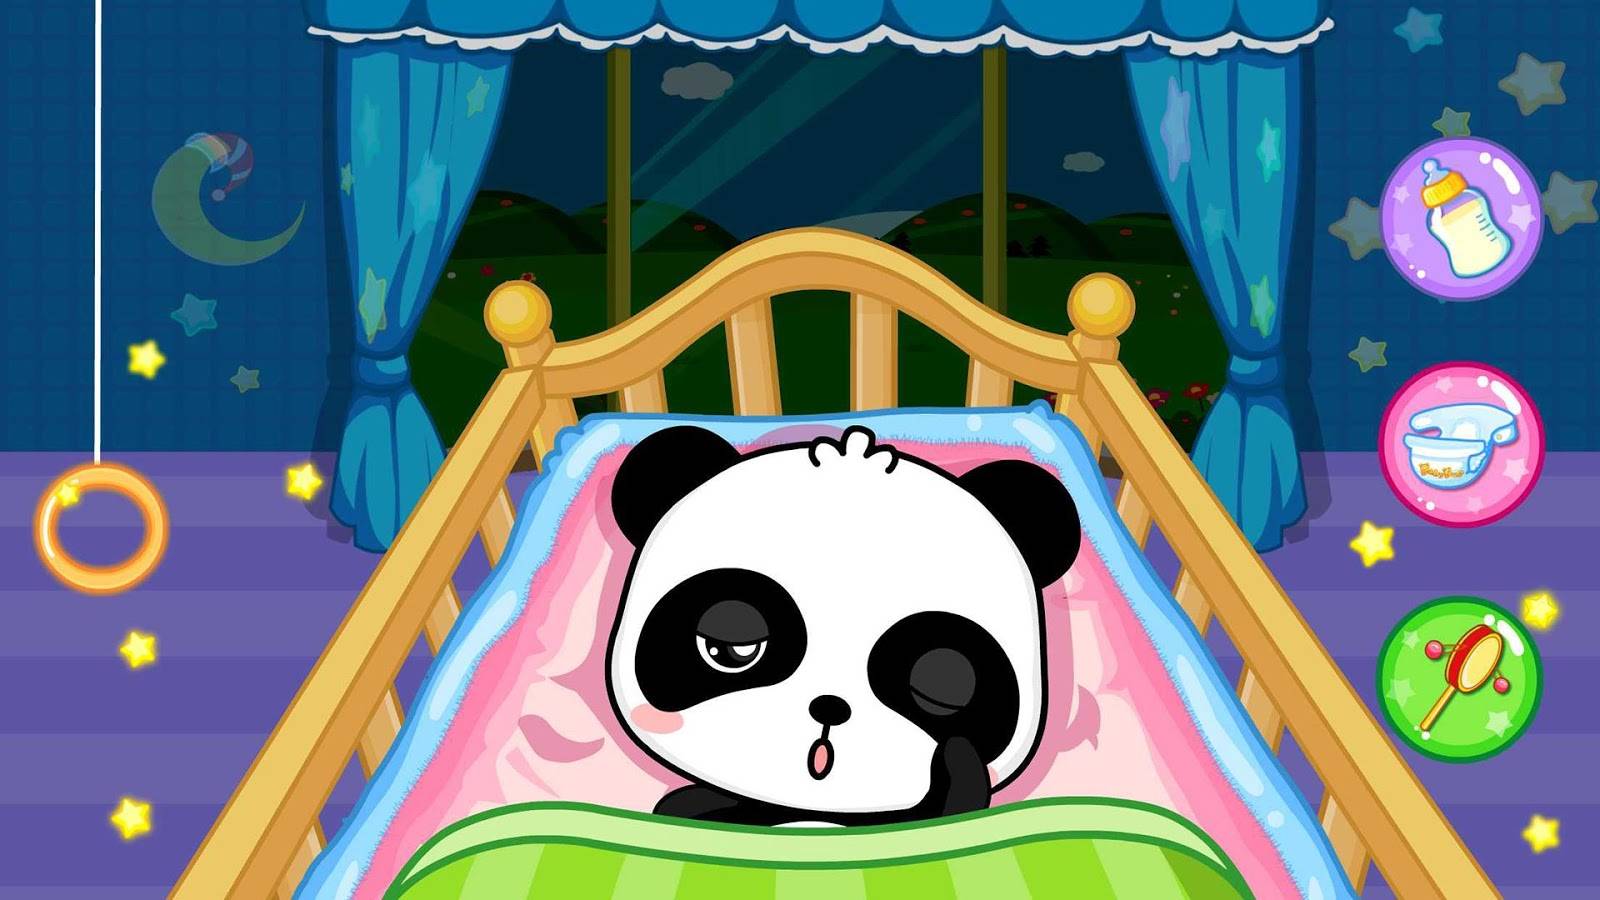 डाउनलोड करें Baby Panda Care